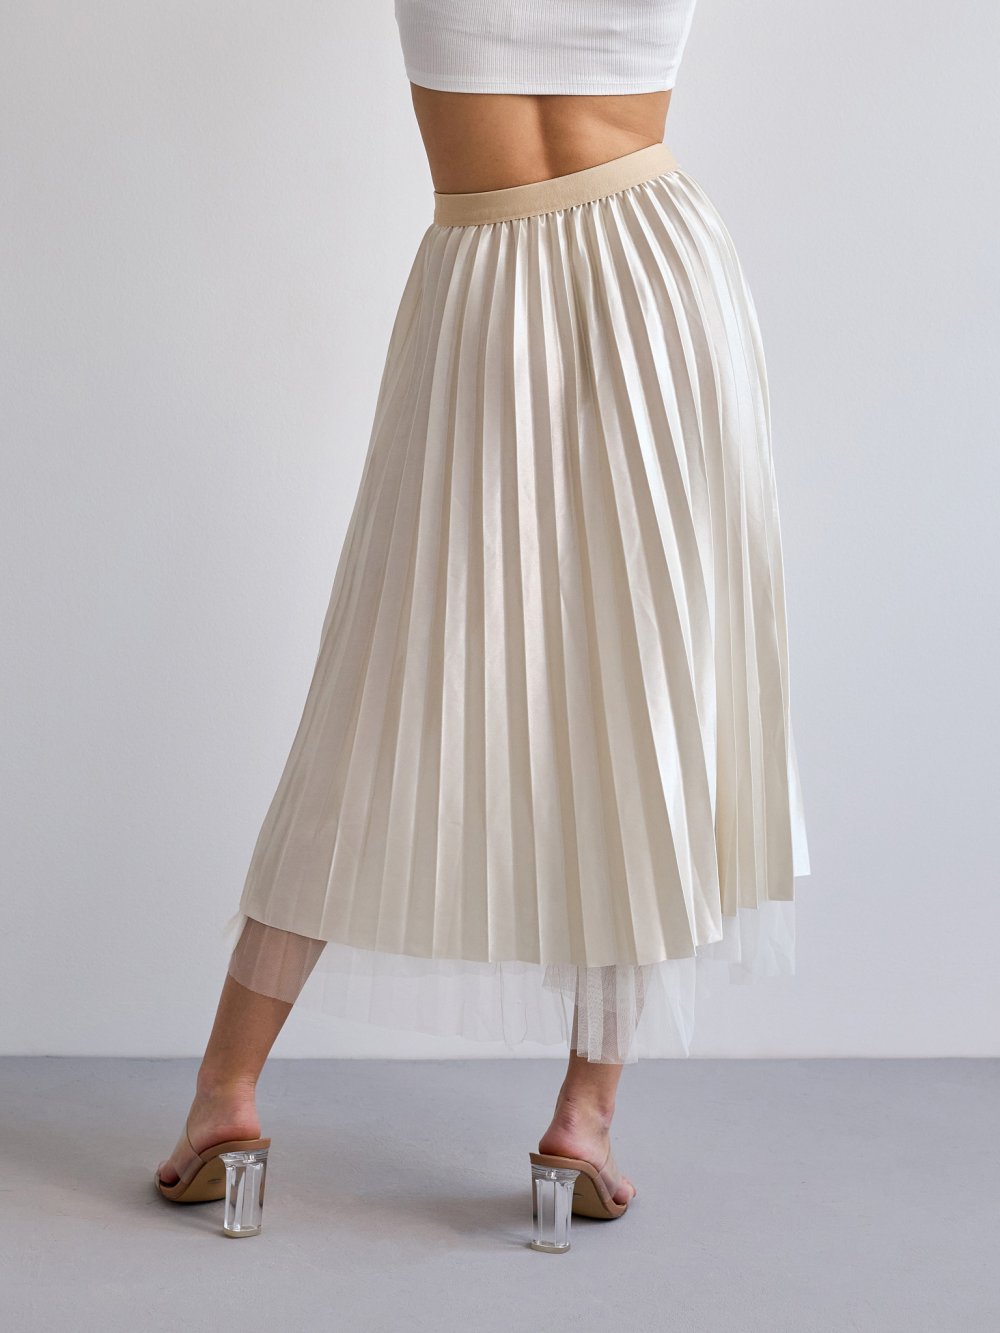 Béžová plisovaná sukně Rilla